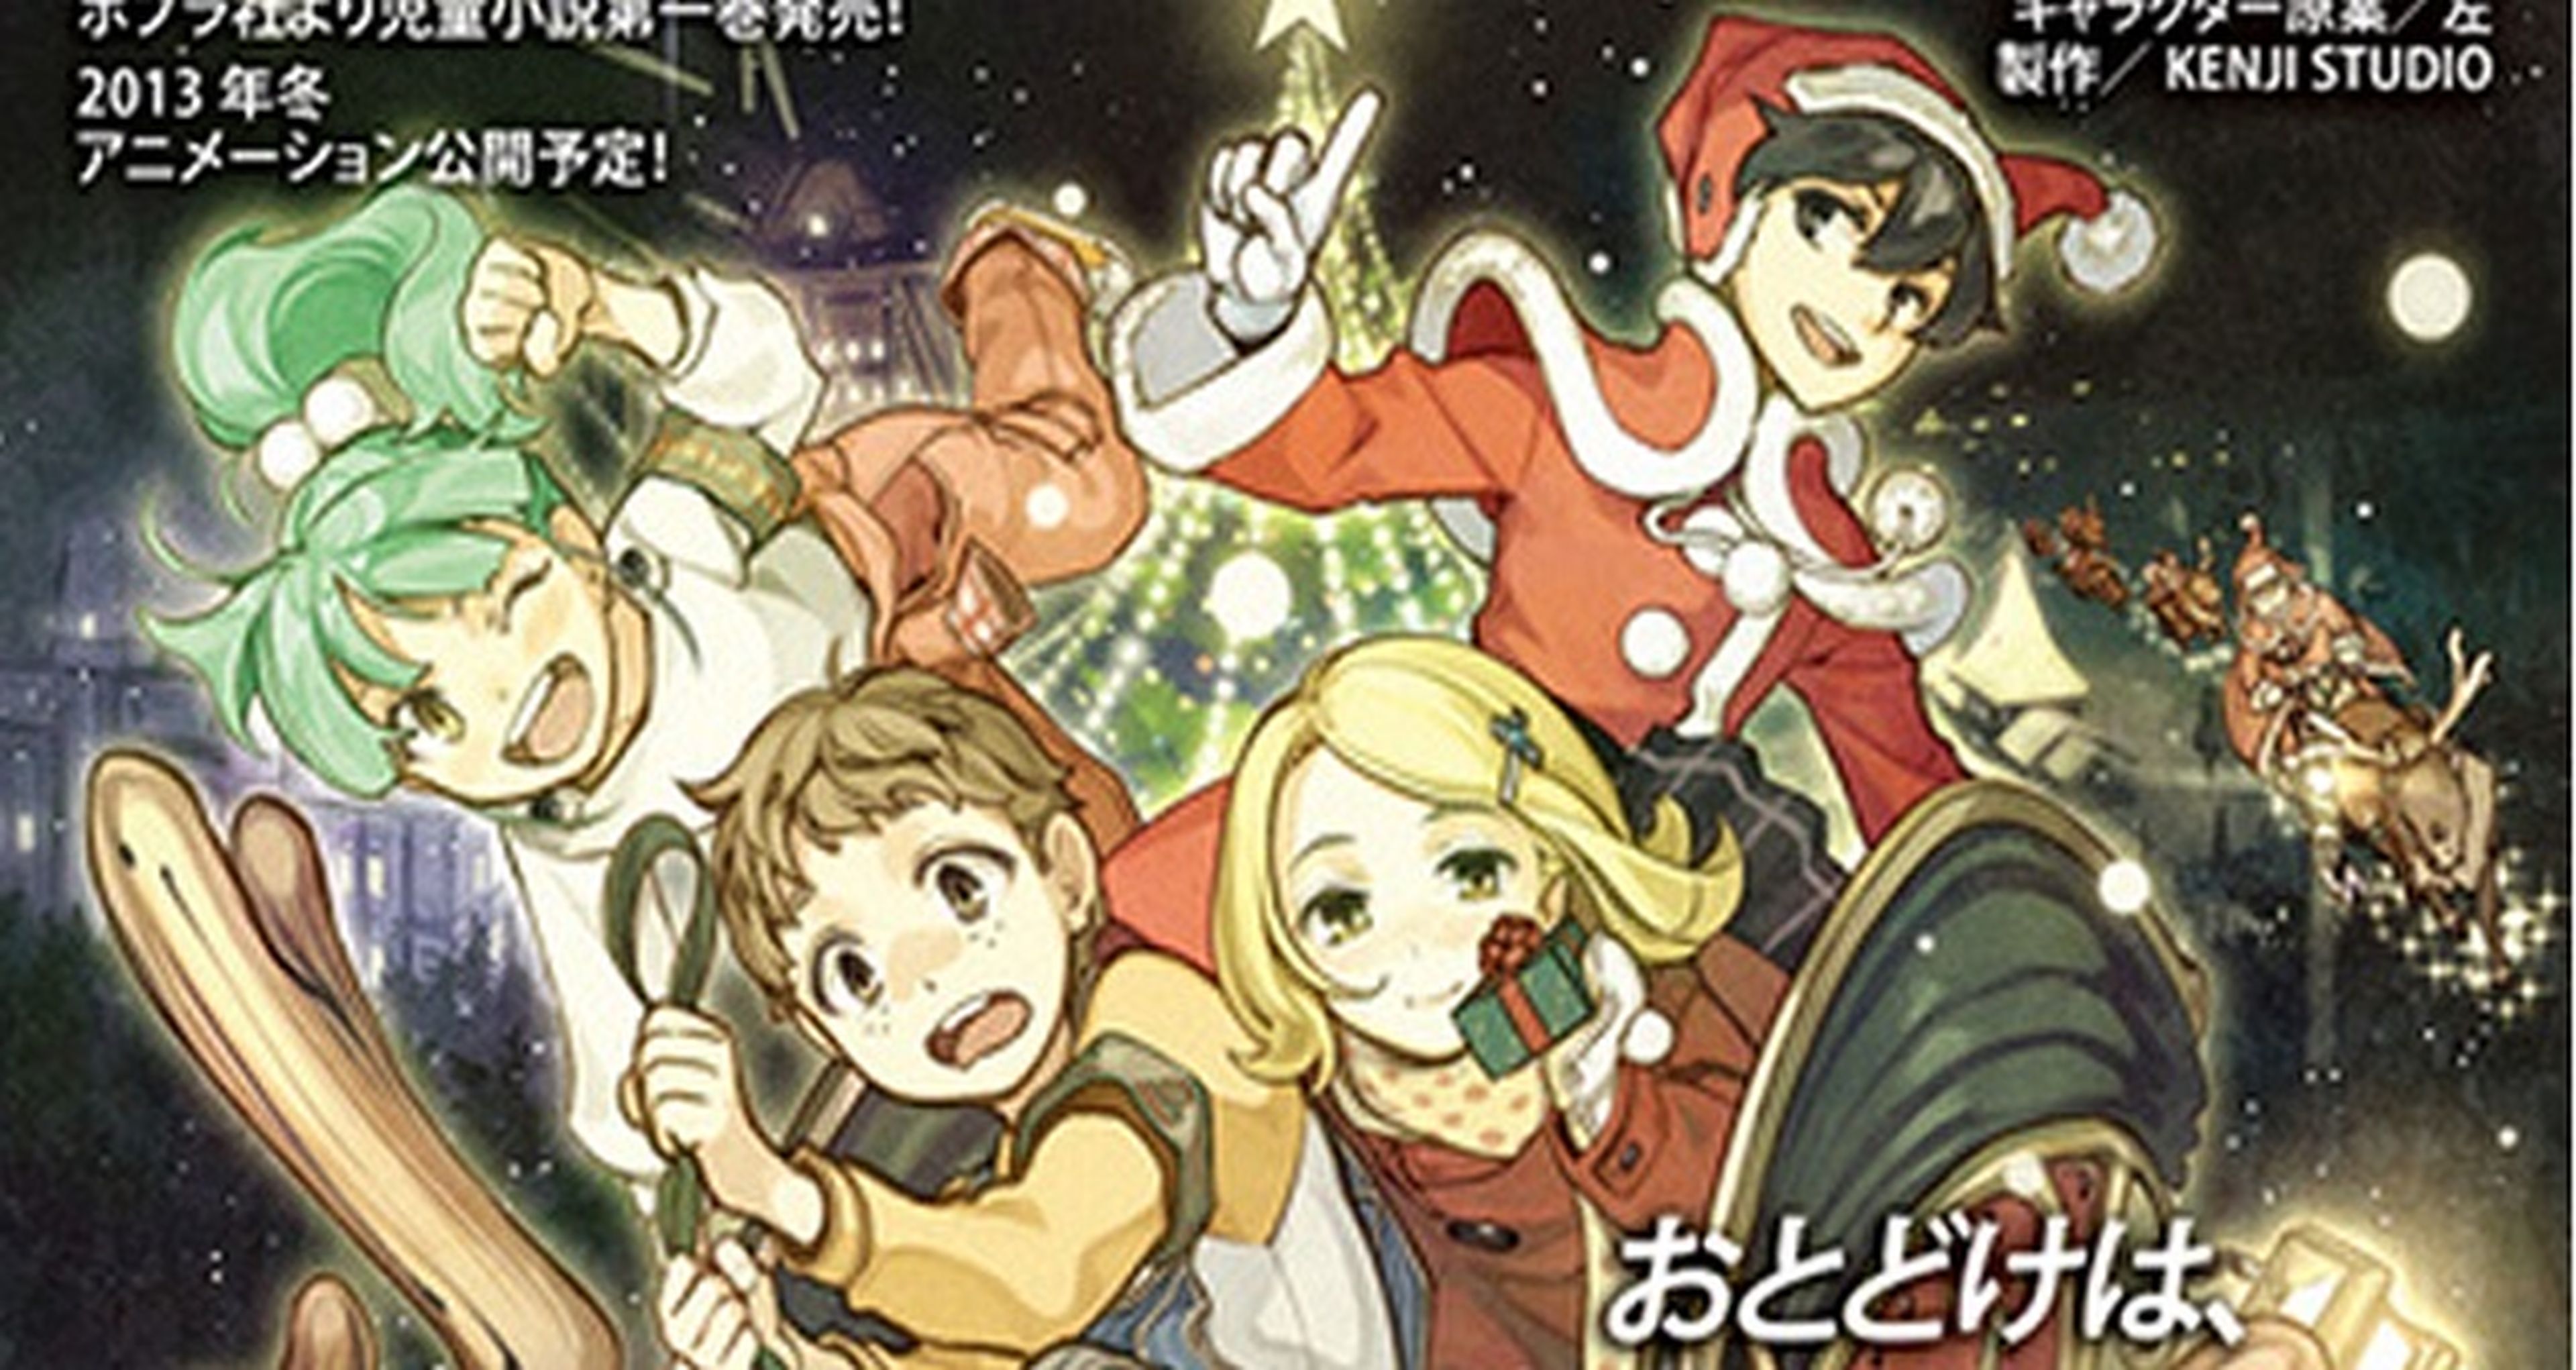 Santa Company, una película navideña de animación japonesa